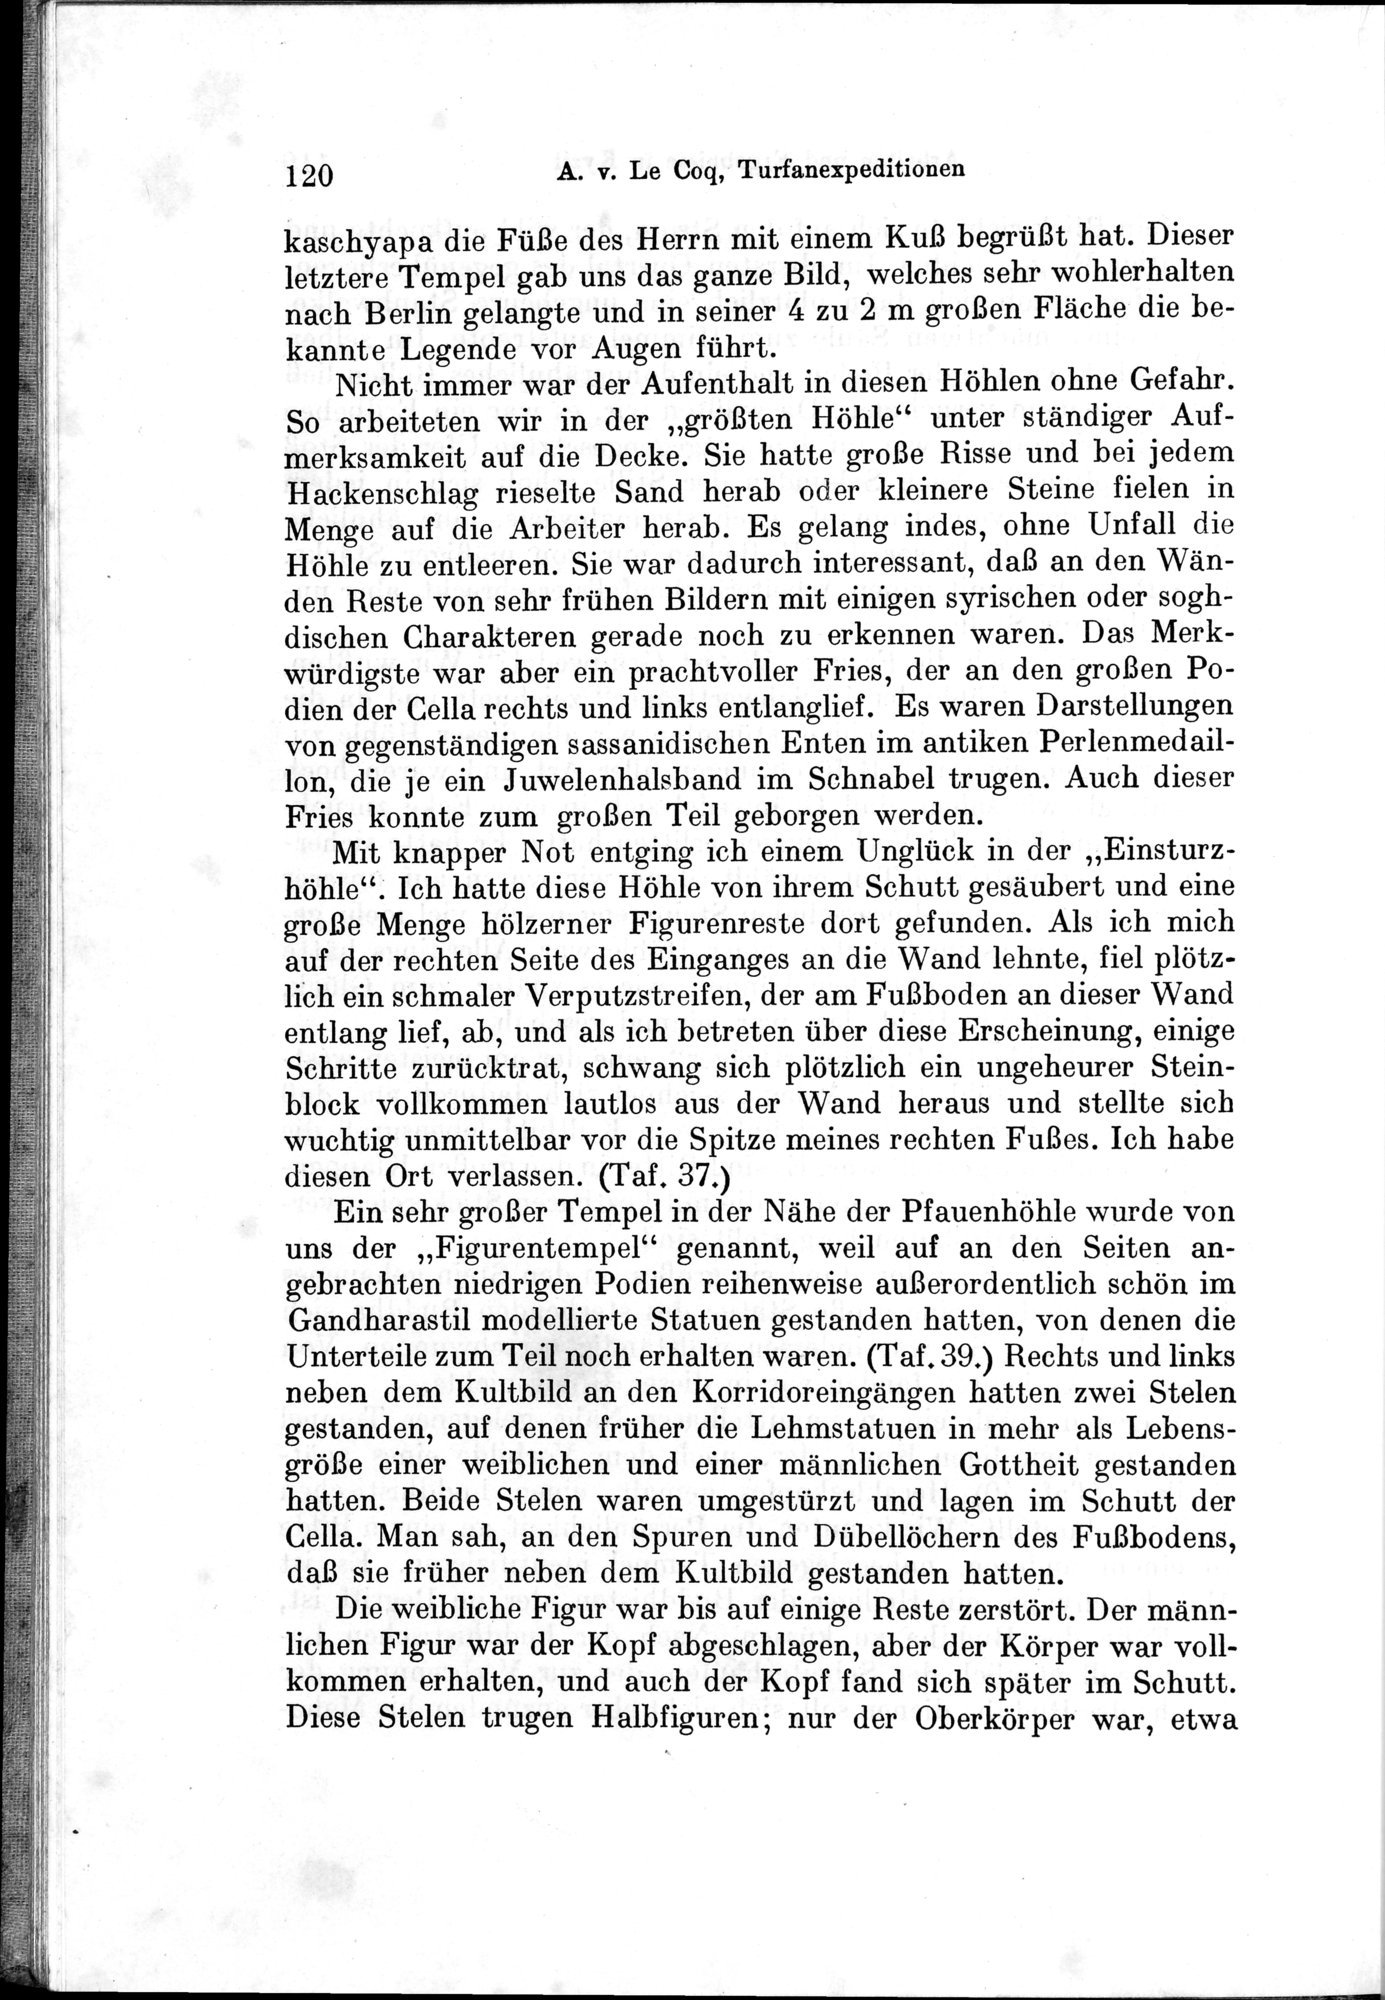 Auf Hellas Spuren in Ostturkistan : vol.1 / Page 172 (Grayscale High Resolution Image)